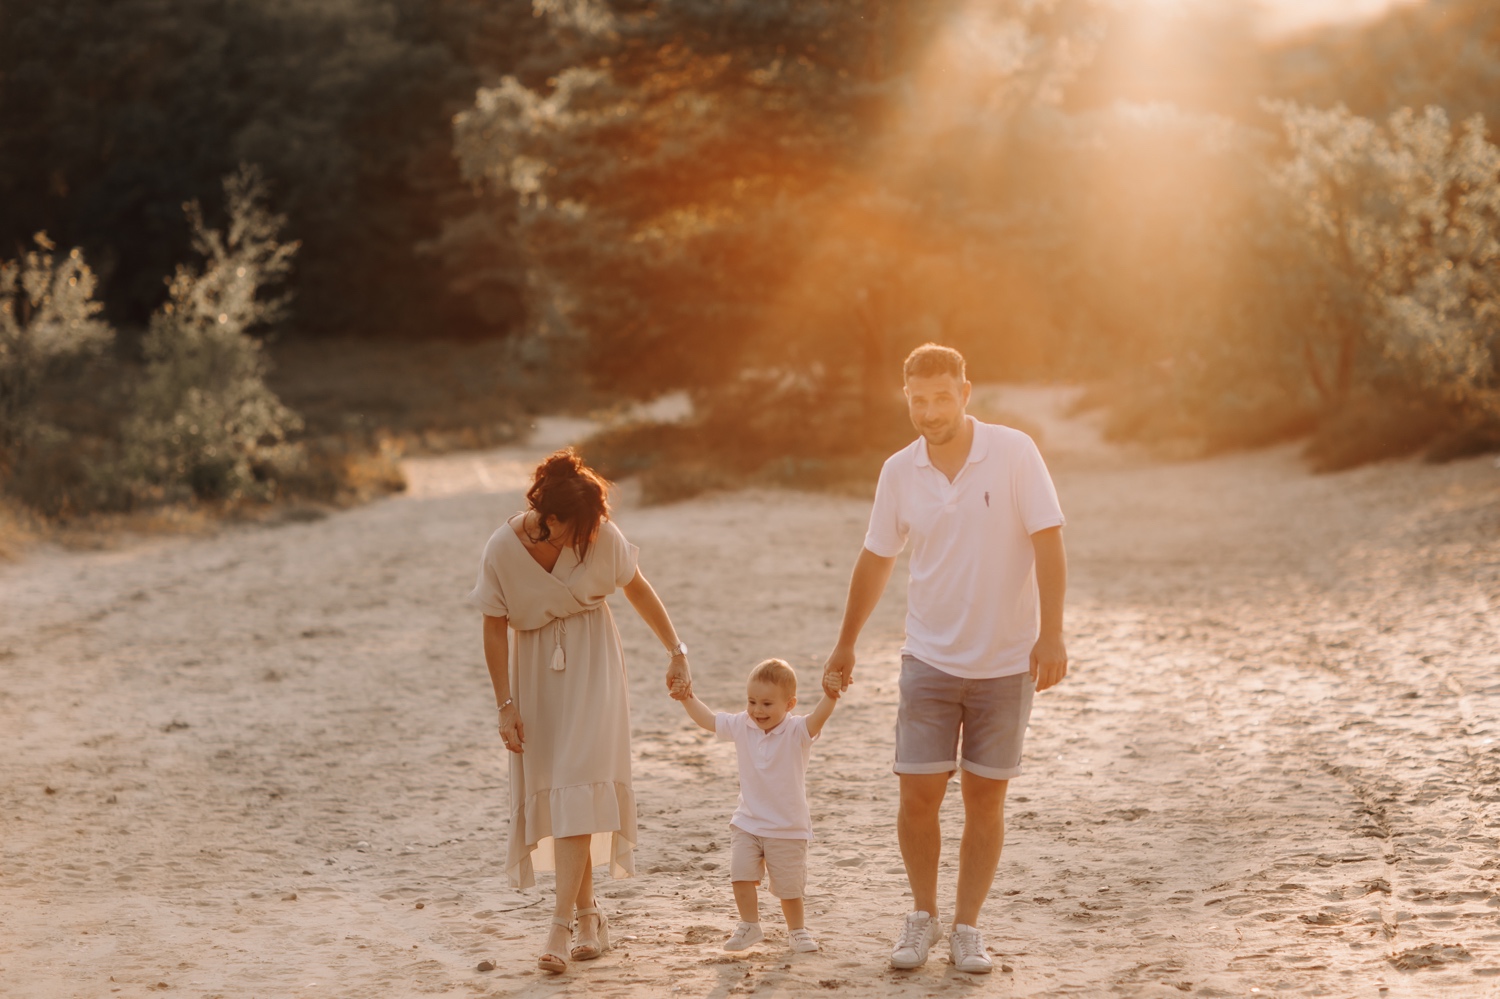 gezin wandelt door het zand bij zonsondergang